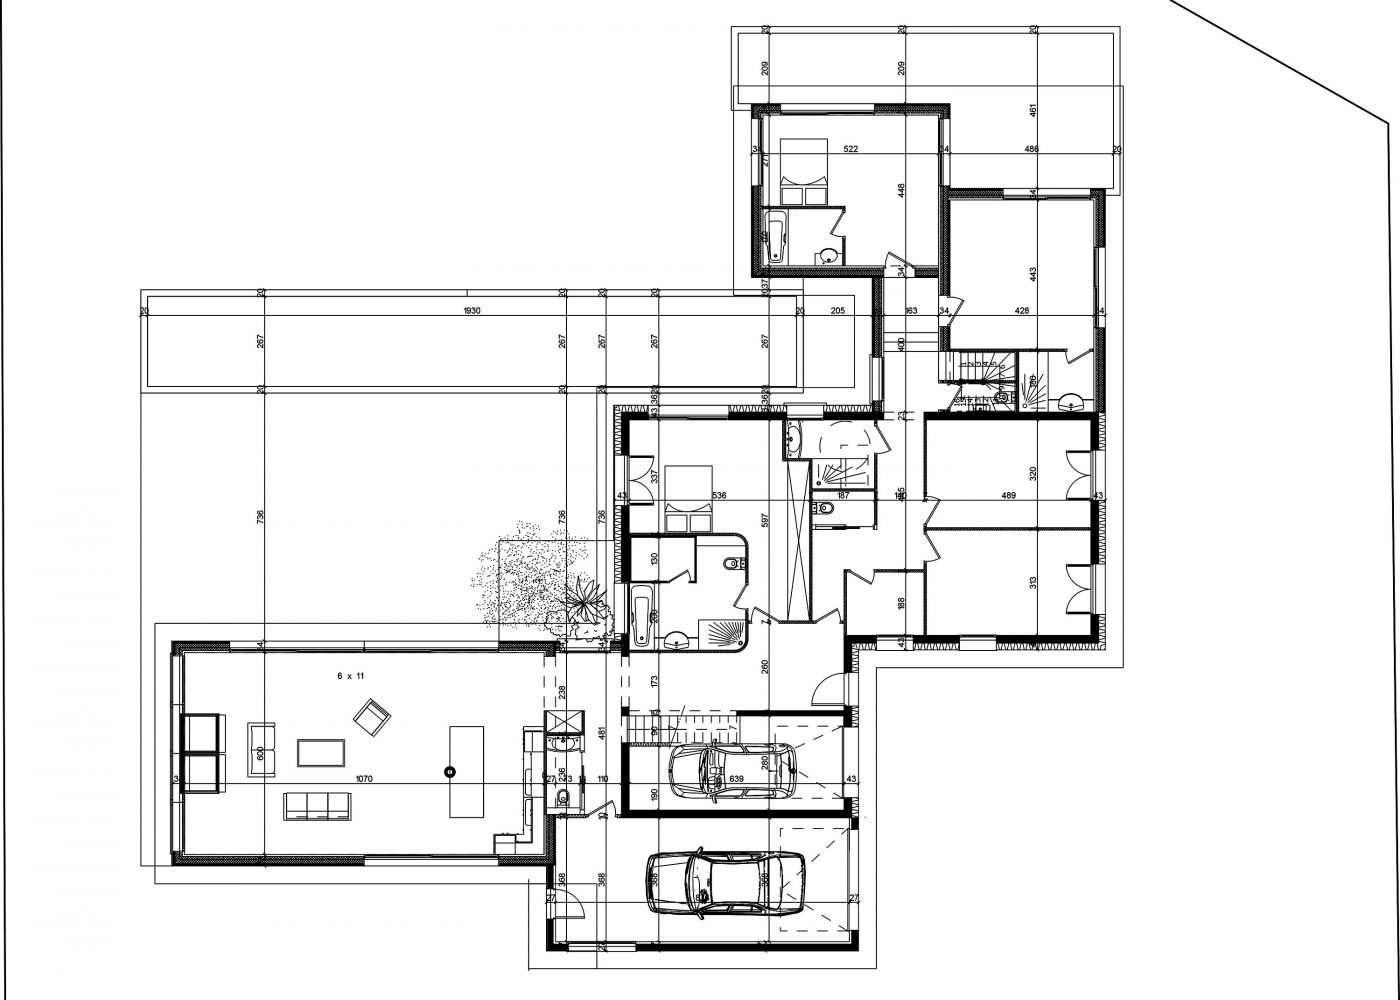 Philippe_Zerbib_Architecte_construction_maisons_ossature_bois_projet_maison_lachaux_View 0_1#0